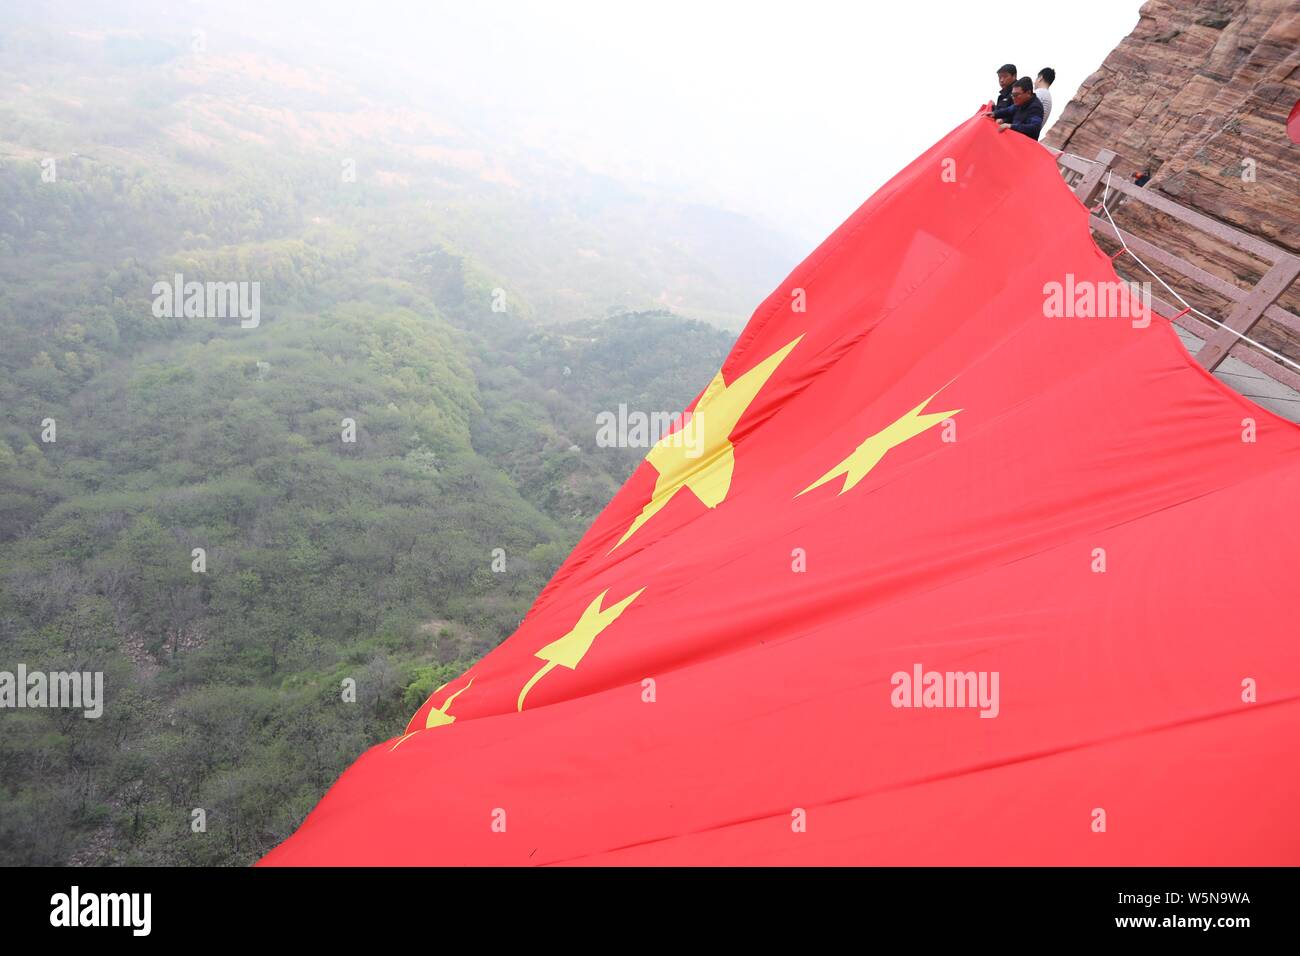 Los trabajadores chinos colgar una enorme bandera nacional para conmemorar el 70º aniversario de la fundación de la República Popular de China a lo largo de un acantilado en el Taihang Foto de stock